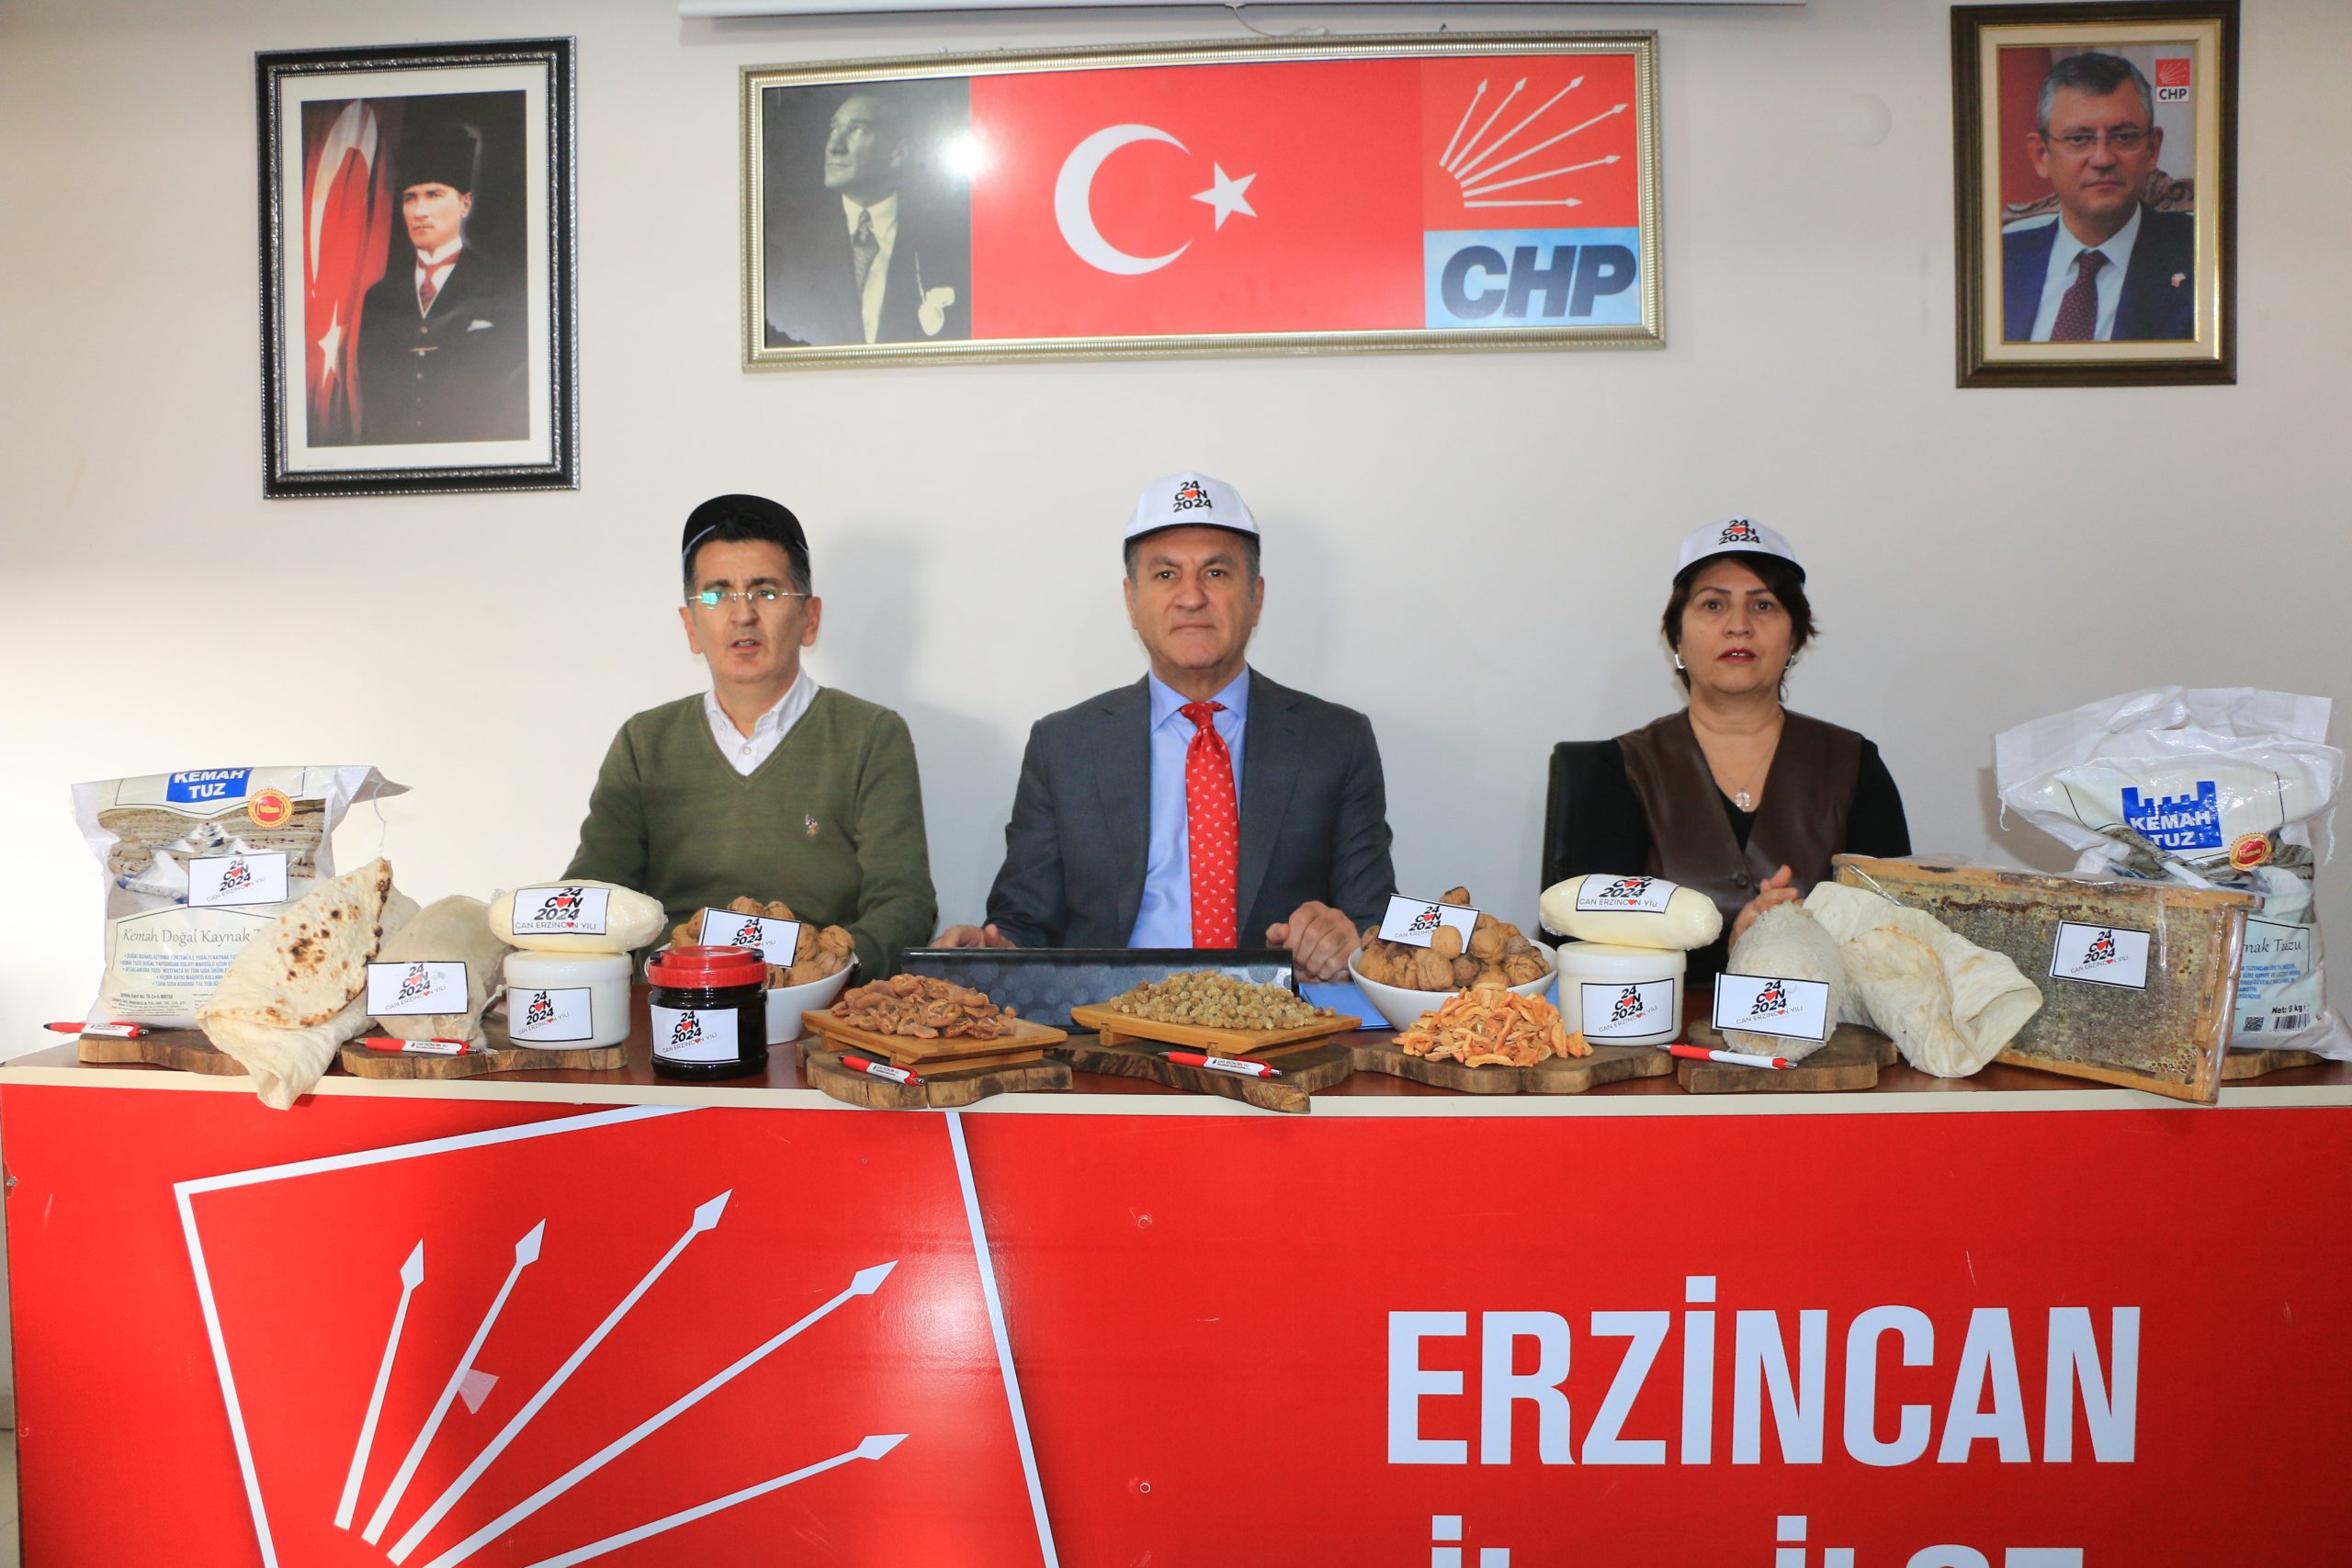 Milletvekili Sarıgül; “Türkiye’nin kurtuluşu ekonomik milliyetçilik yapmak